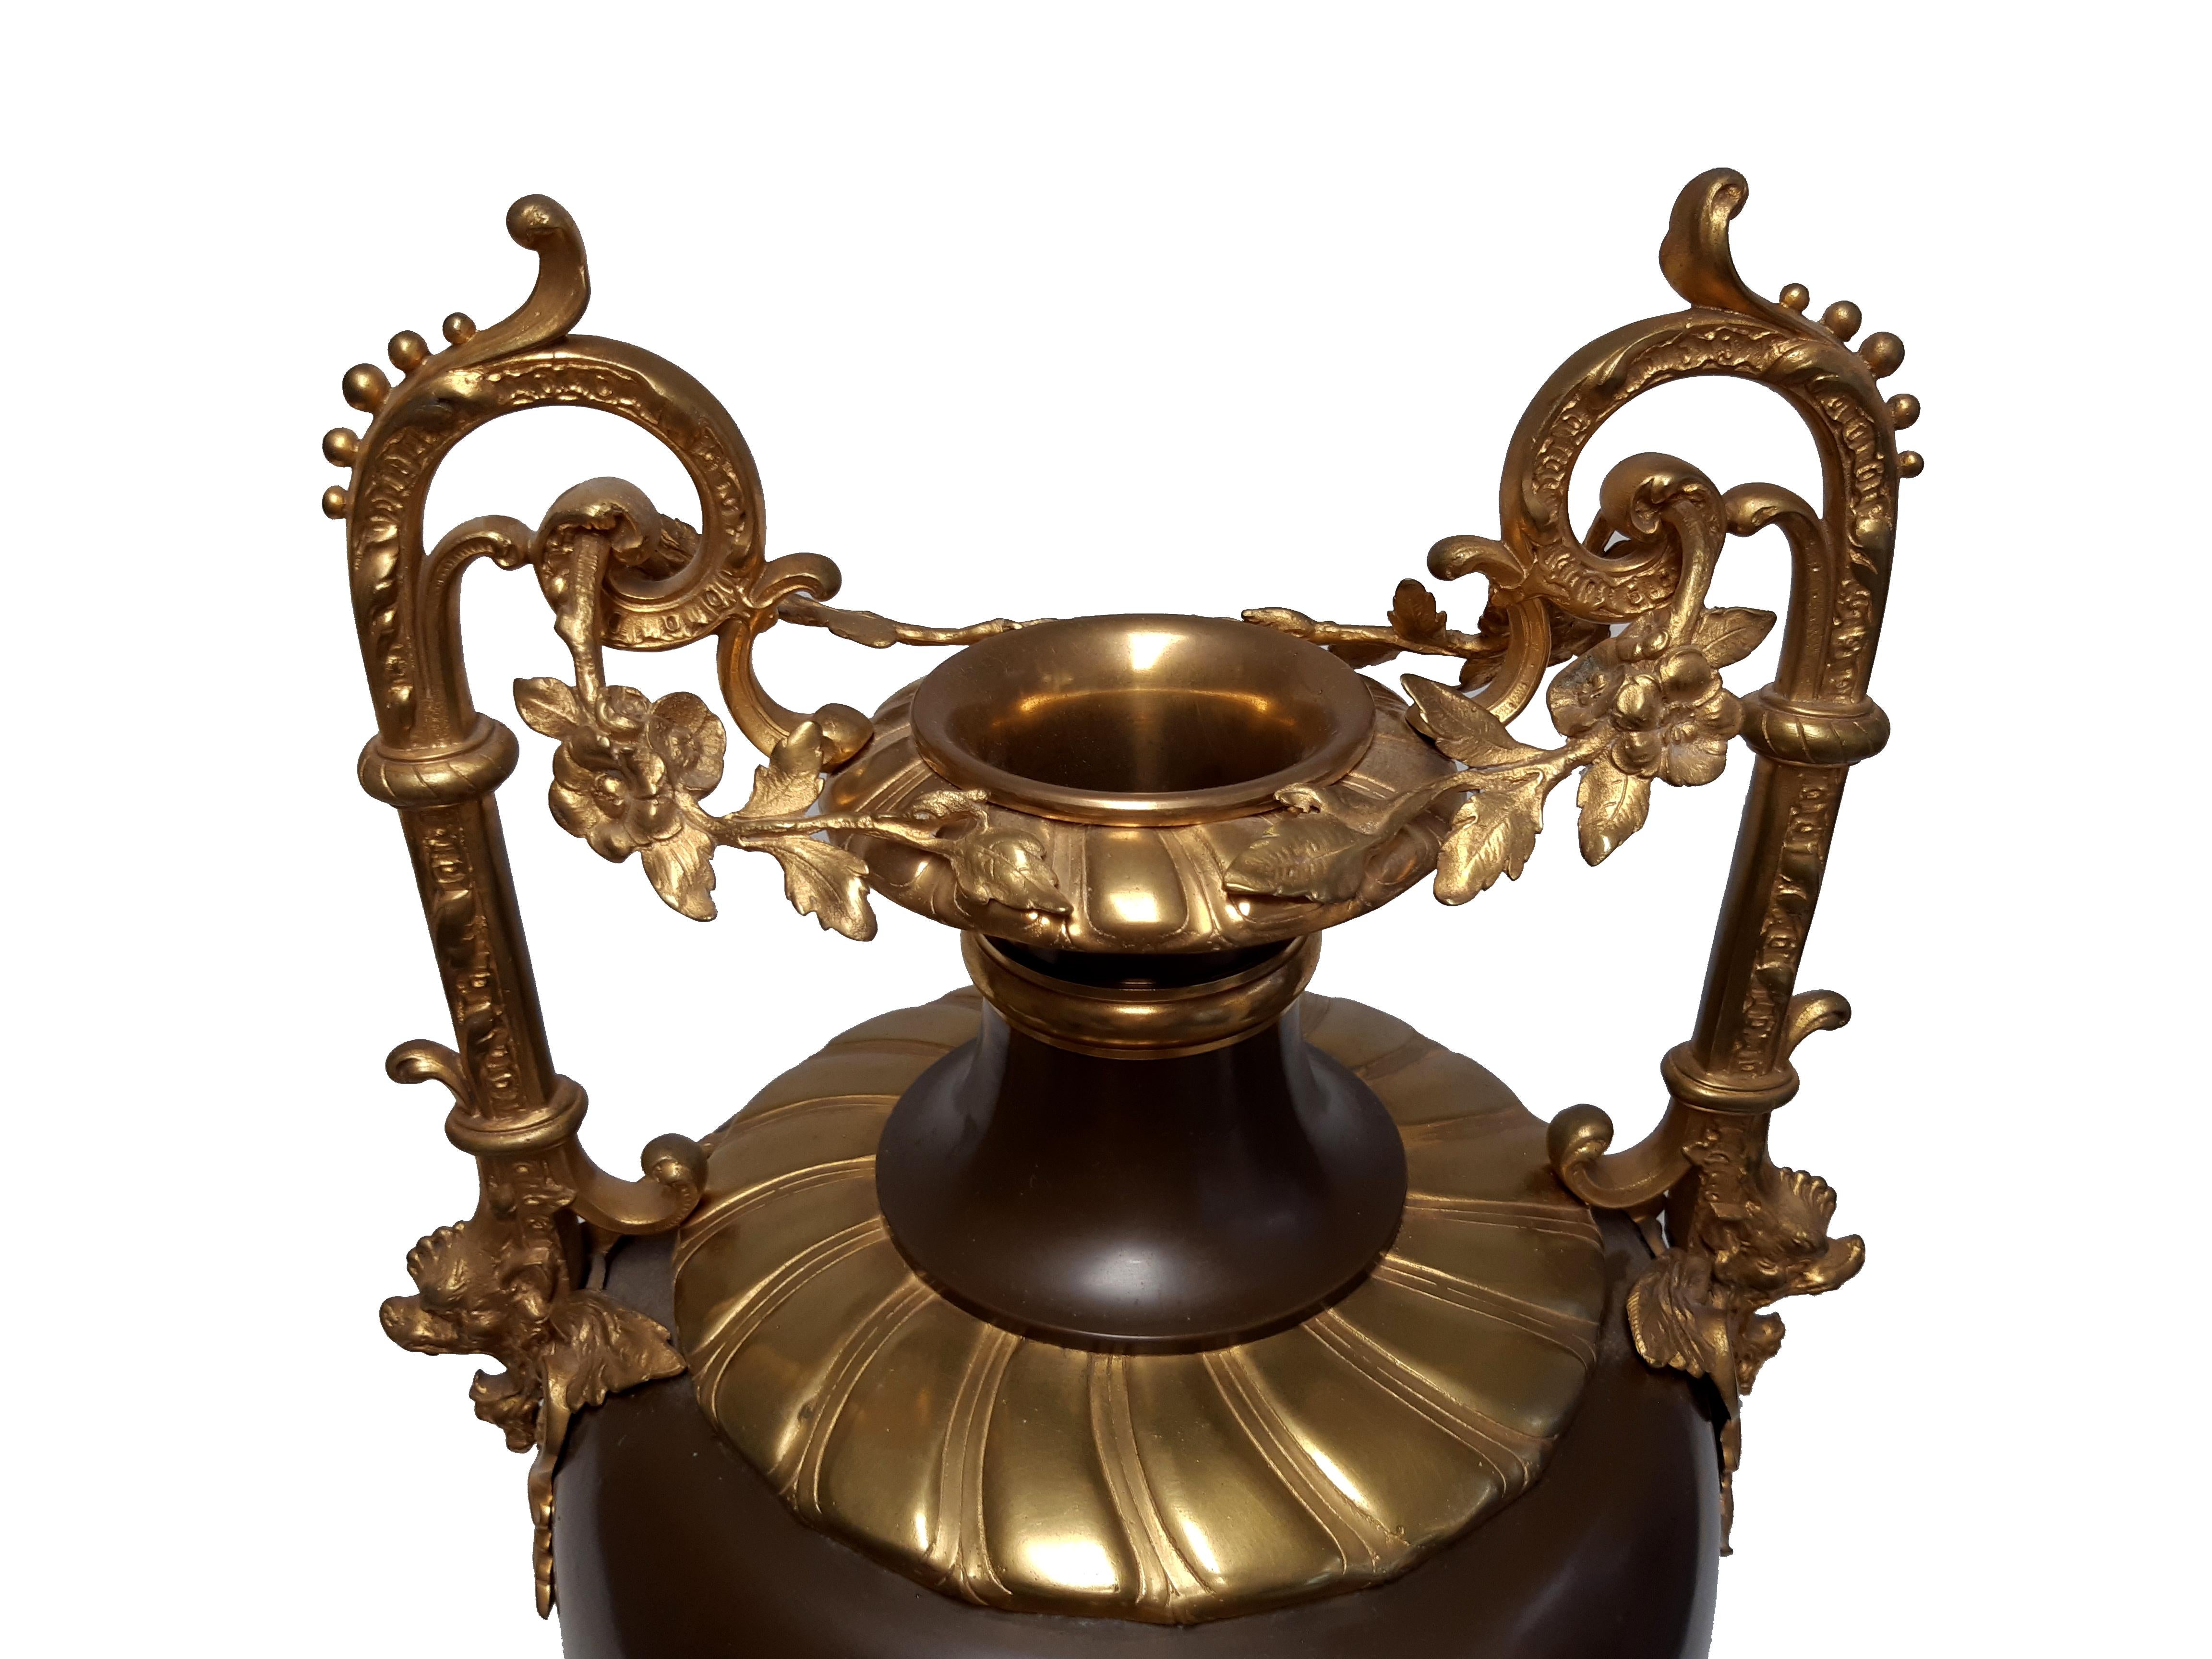 Seltene große Prunkvase in Kupfer und vergoldeter Bronze, wohl um 1870, möglicherweise Frankreich oder Russland.

Auf der versilberten Kupferguss-Kartusche Darstellung einer mit Gewand bekleideten Frau, eine mit Blumenkorb tragend, von unten von